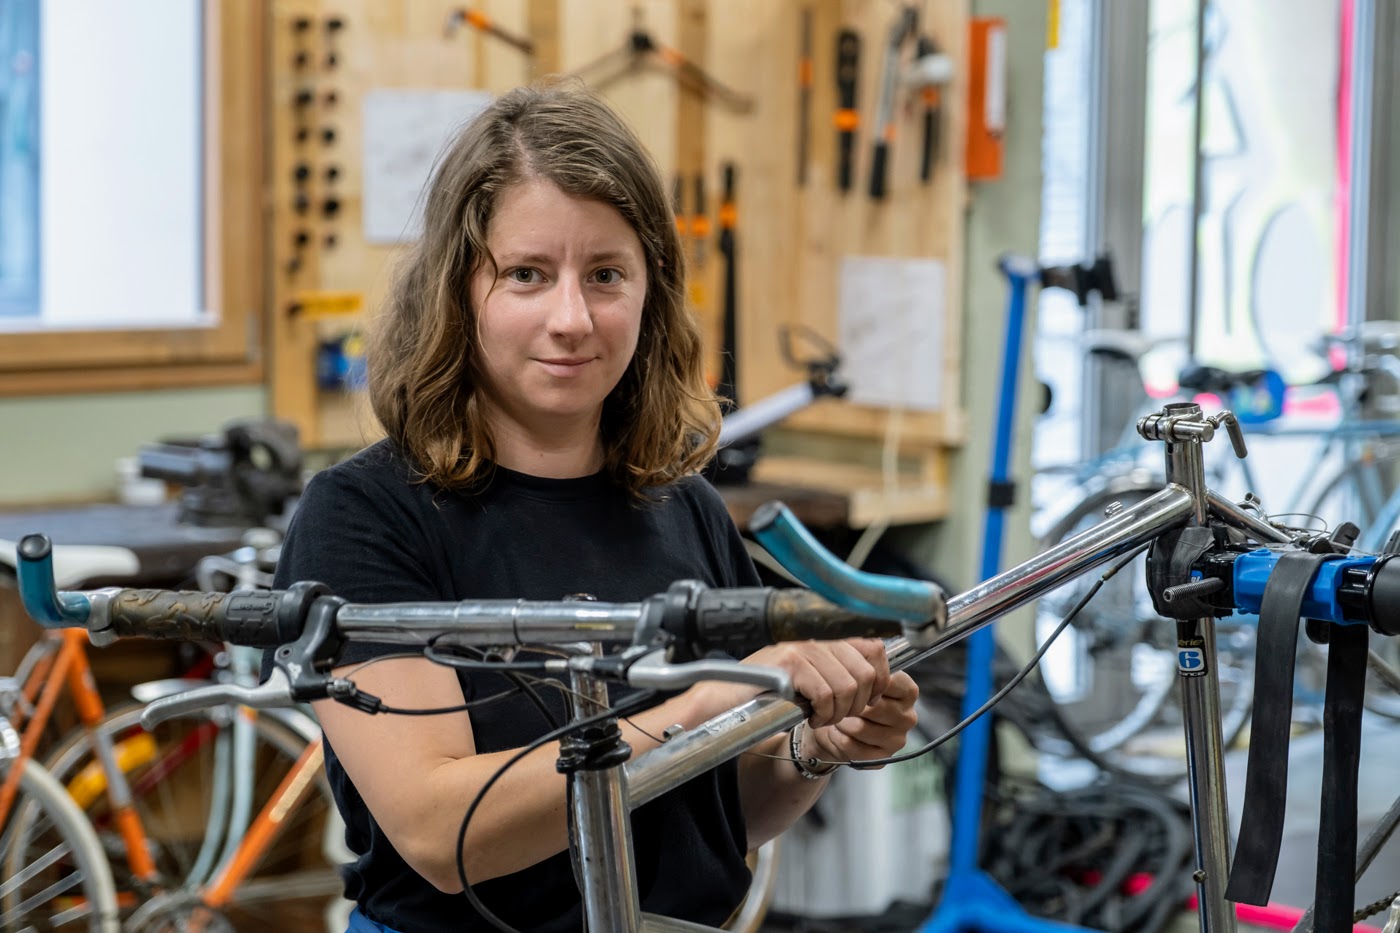 La Cycklette Atelier de vente et d'auto-réparation de vélos dans le 11e